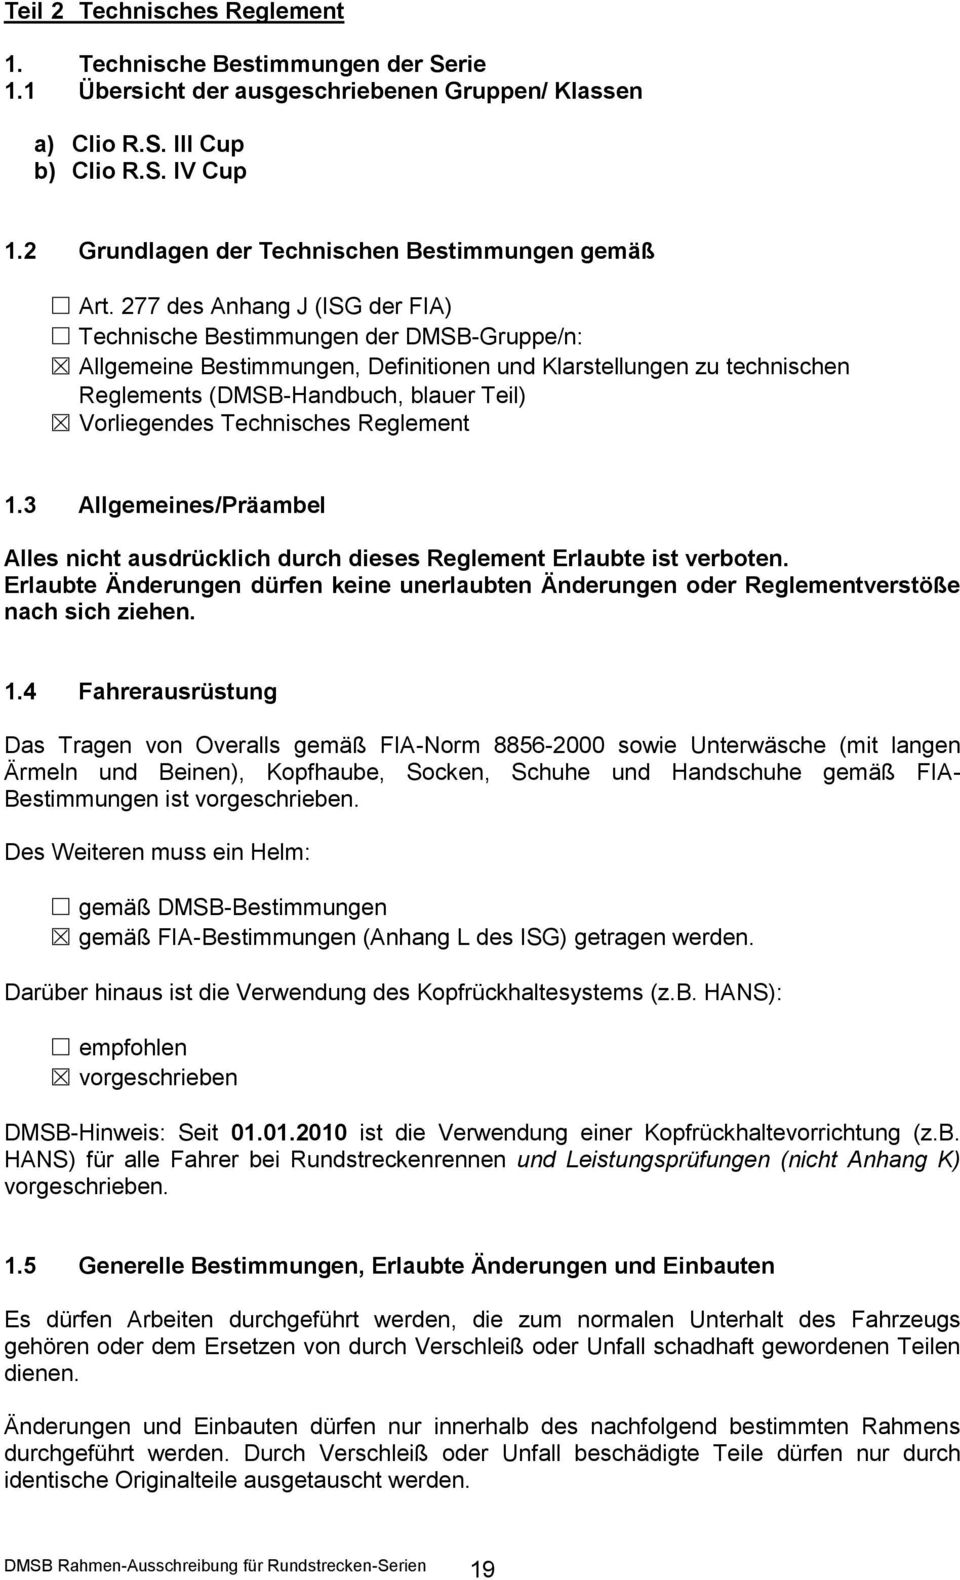 277 des Anhang J (ISG der FIA) Technische Bestimmungen der DMSB-Gruppe/n: Allgemeine Bestimmungen, Definitionen und Klarstellungen zu technischen Reglements (DMSB-Handbuch, blauer Teil) Vorliegendes